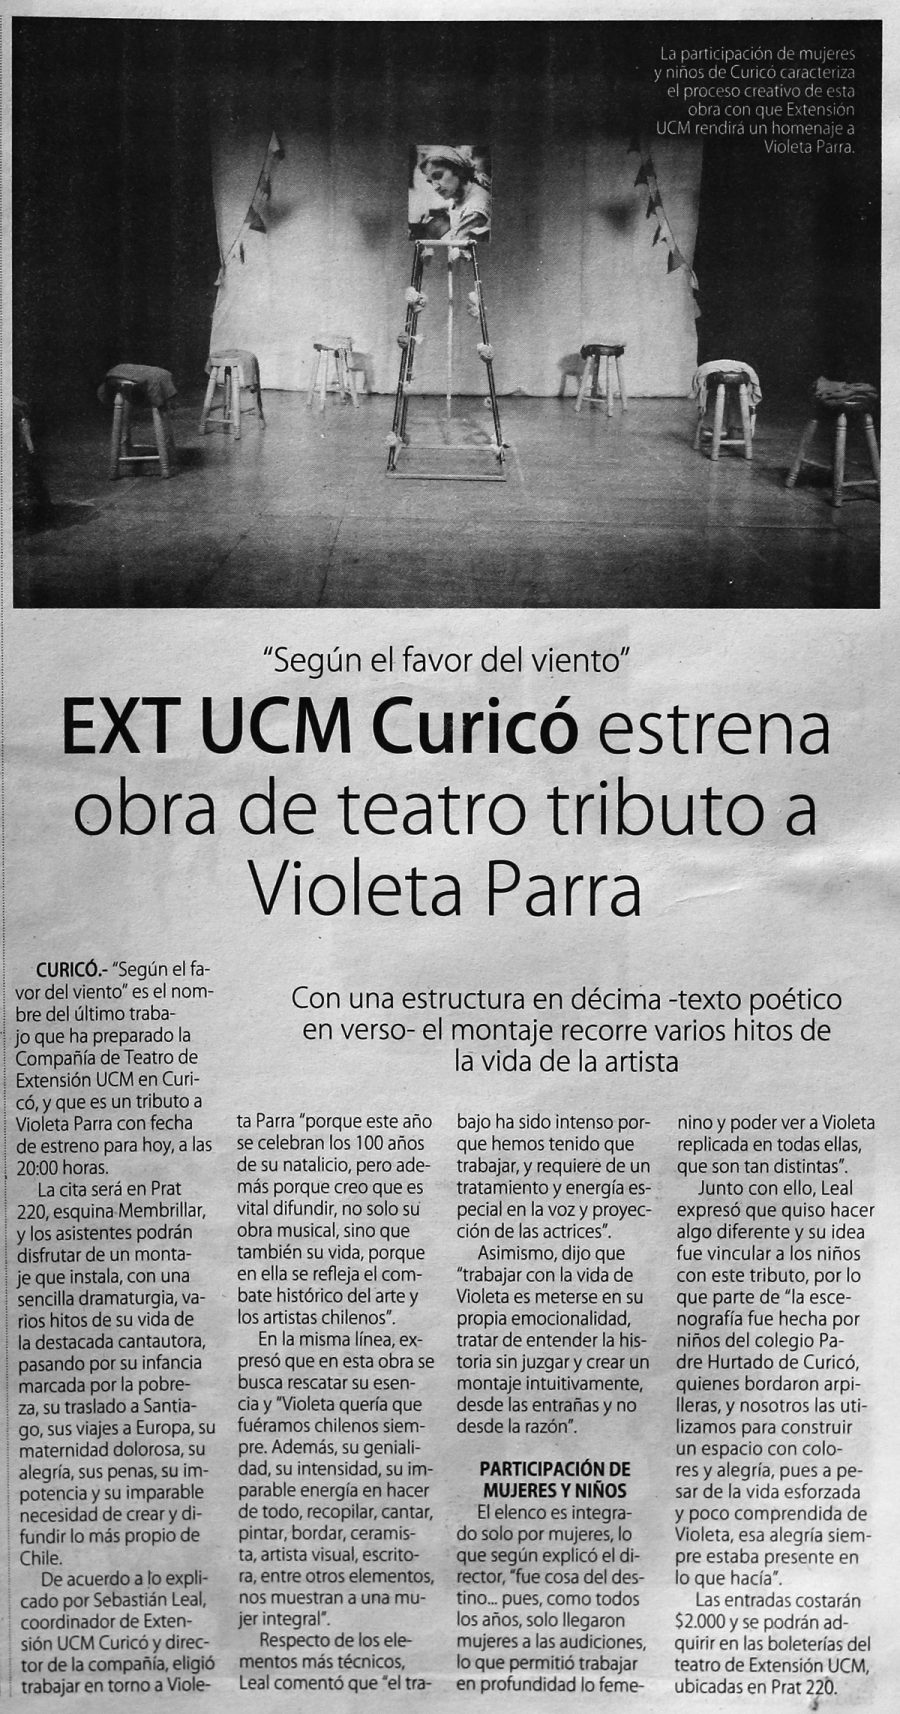 14 de septiembre en Diario El Centro: “EXT UCM Curicó estrena obra de teatro tributo a Violeta Parra”